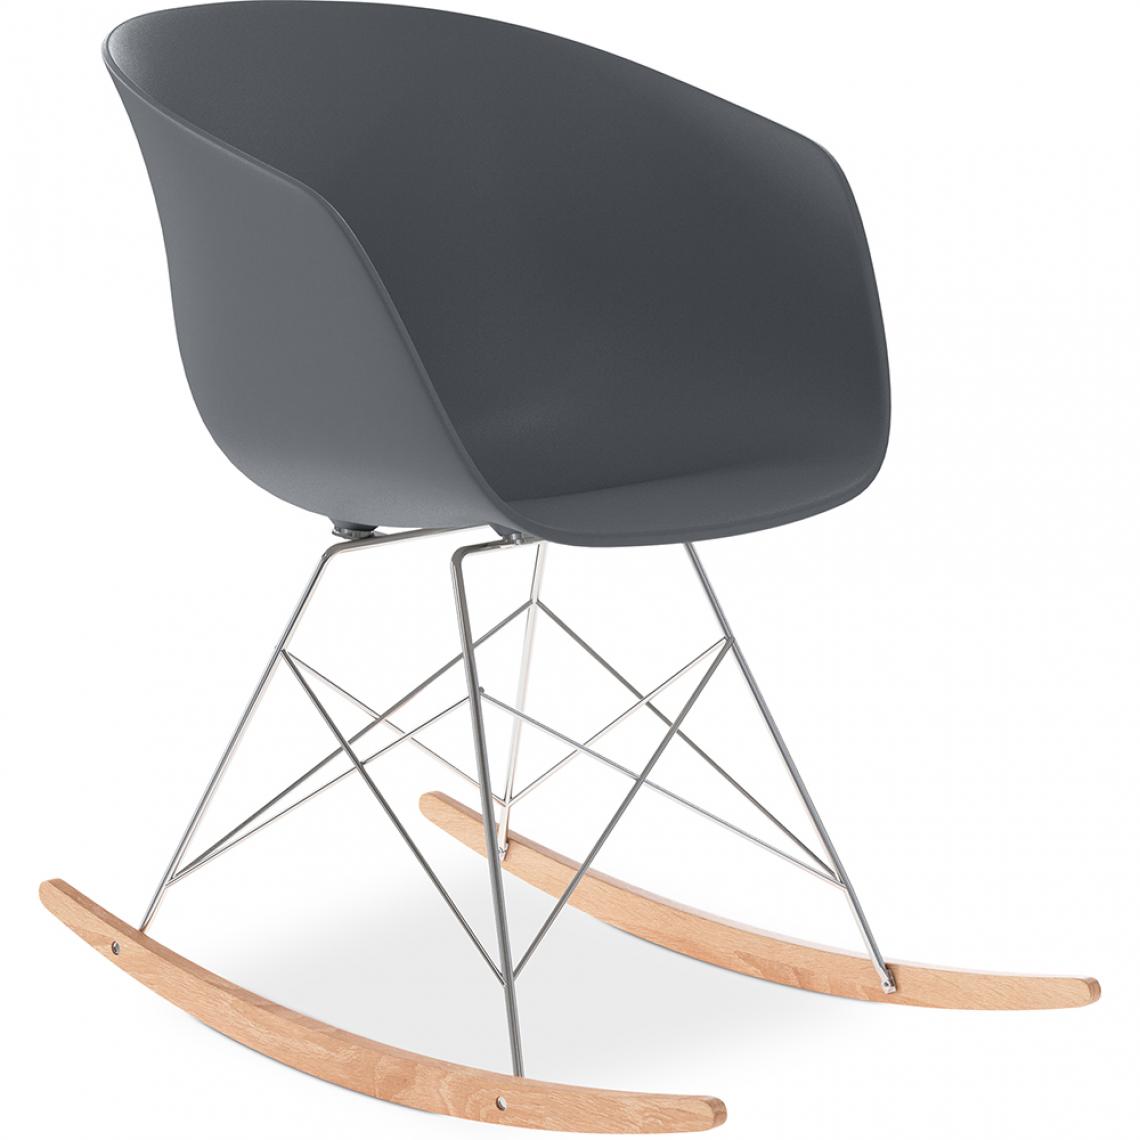 Iconik Interior - Rocking chair design scandinave avec pieds en bois et métal - Polin - Chaises